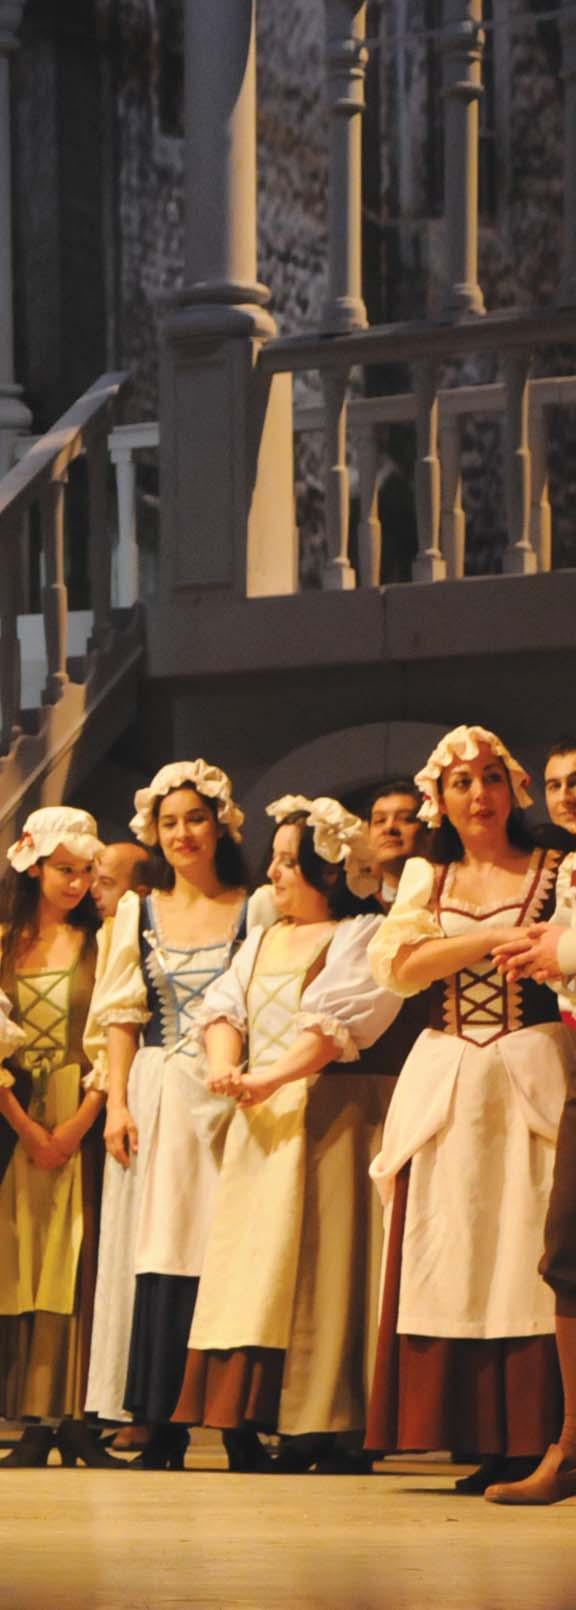 kültür-sanat 65 Devlet Opera ve Bale Sanatçısı Murat Karahan, kendisini sahne üzerinde izleyenleri muhteşem sesiyle büyüleyen, opera sanatının genç seslerinden biri.